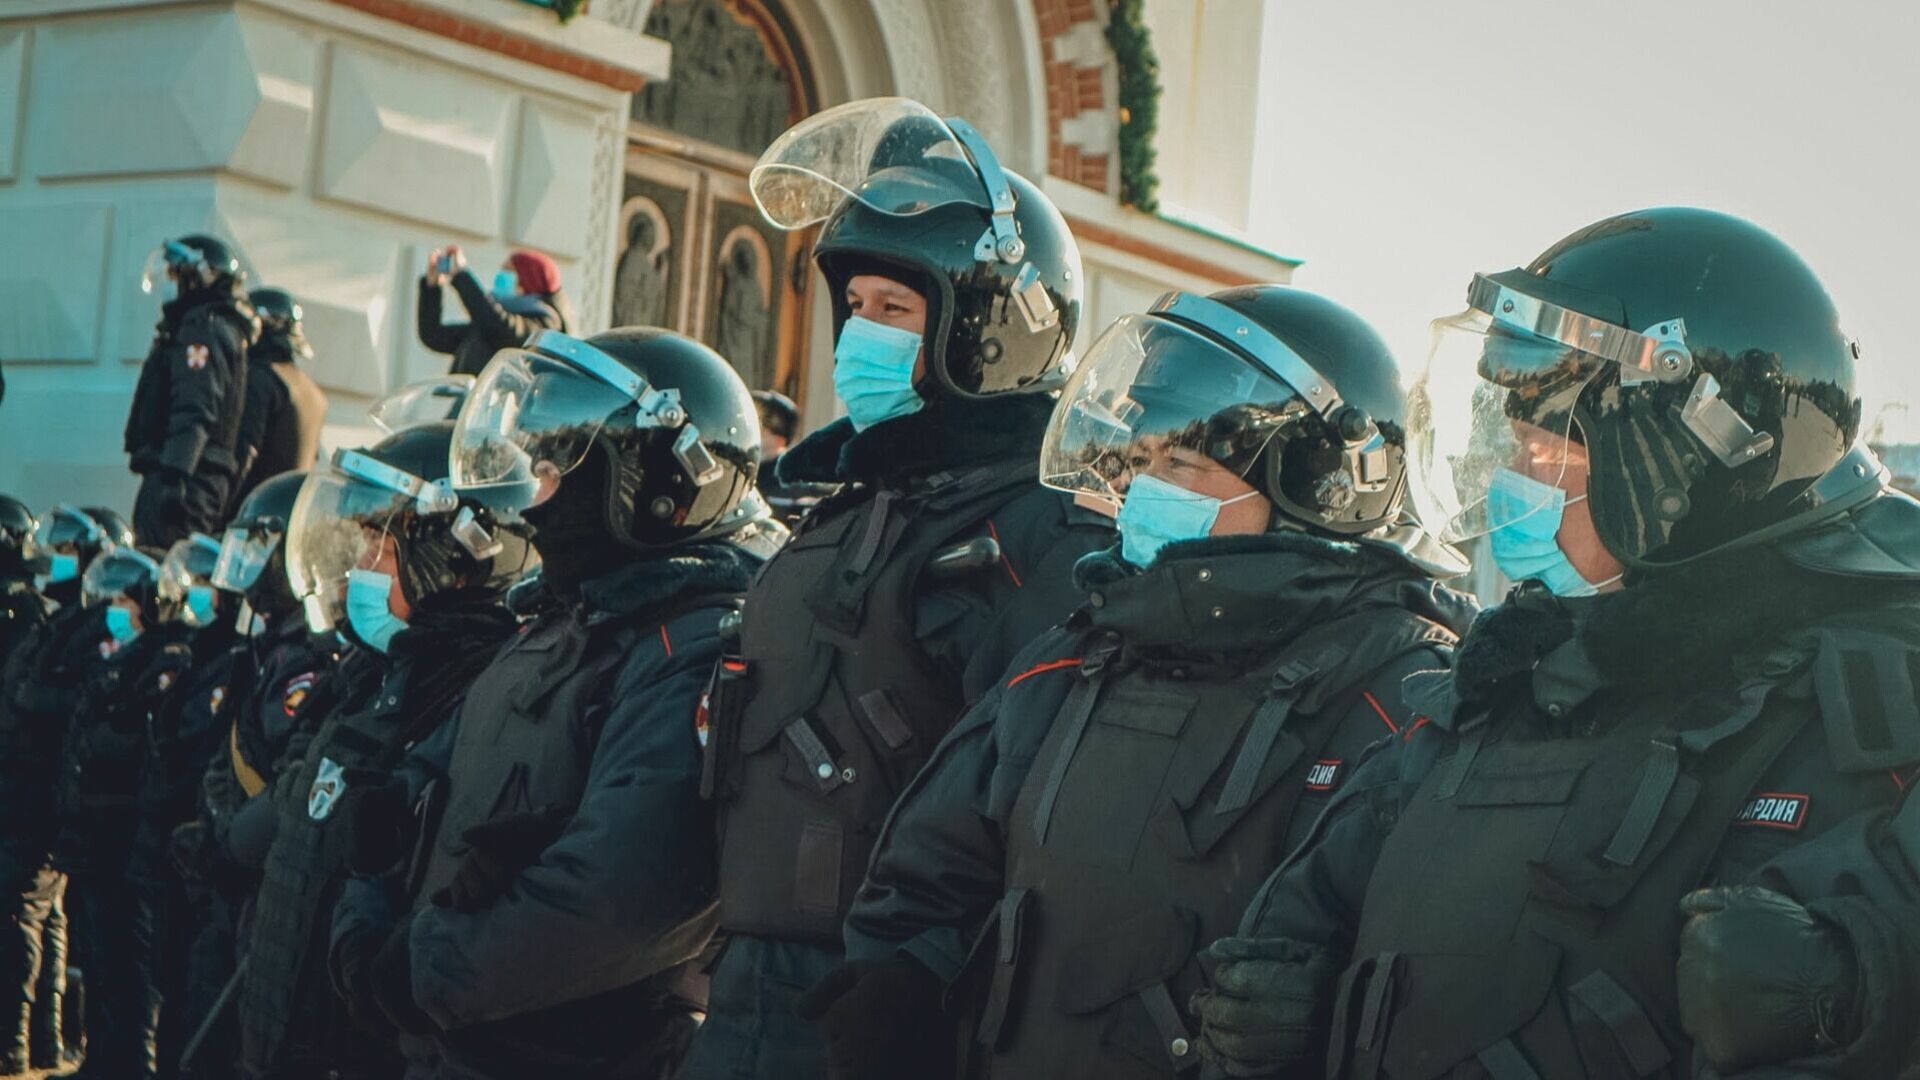 О вооружённых силовиках у вуза в центре Владивостока рассказали в Росгвардии